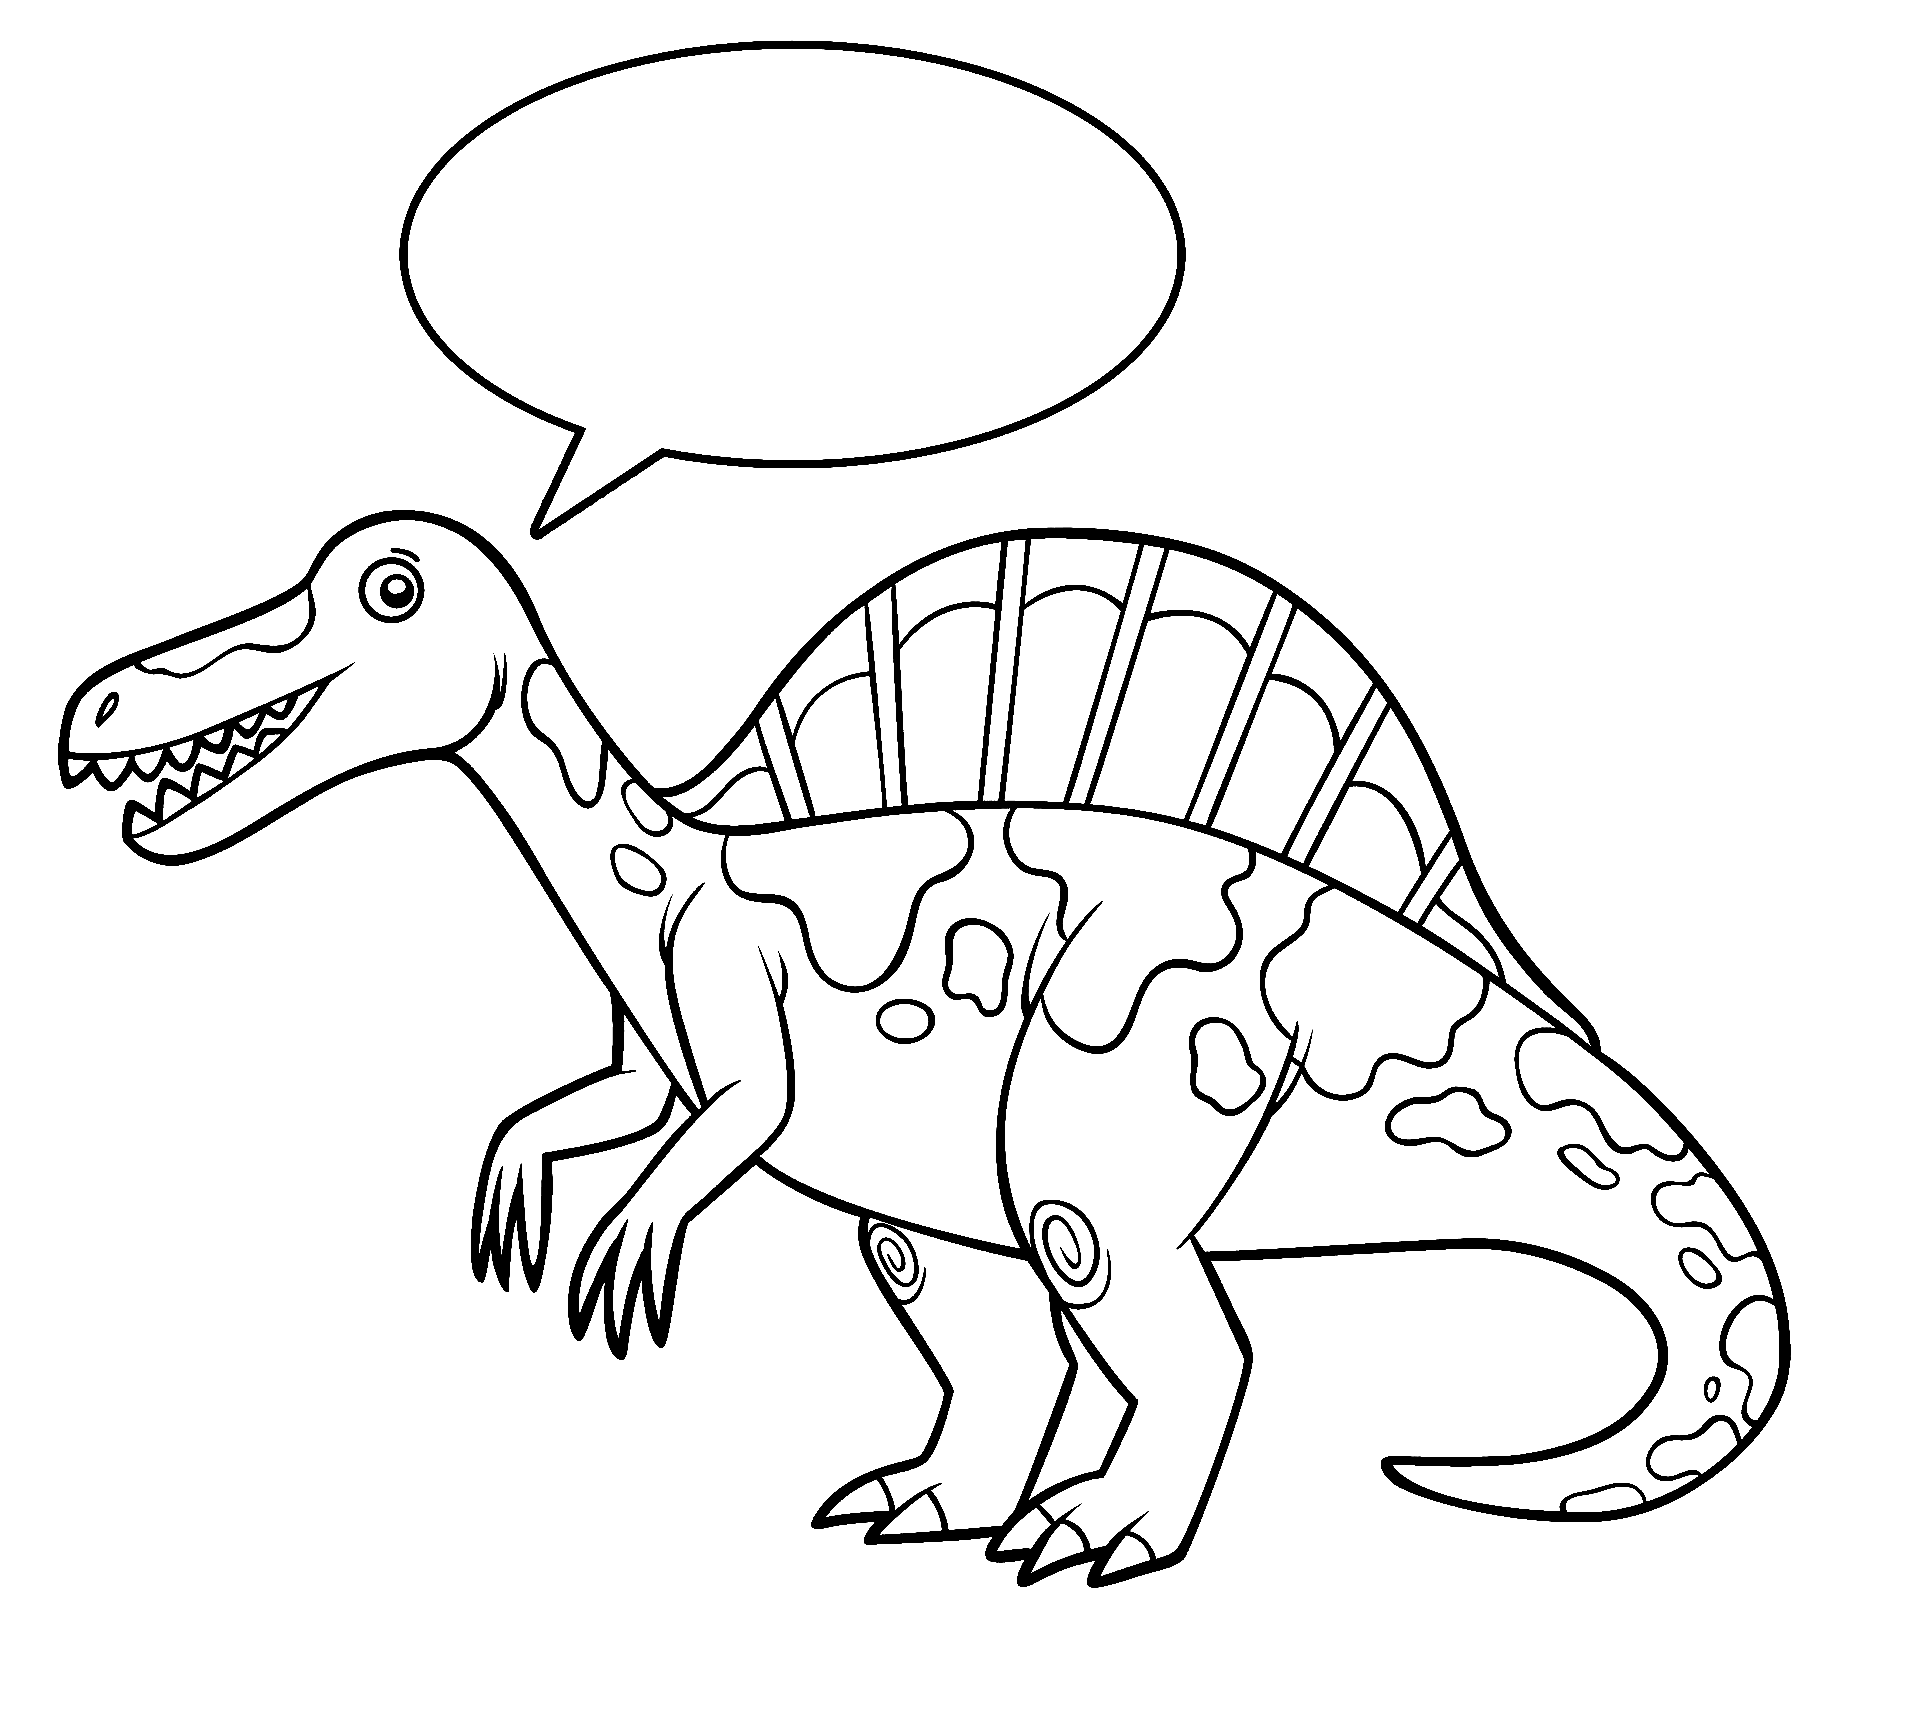 Einzigartige Spinosaurus-Malseite